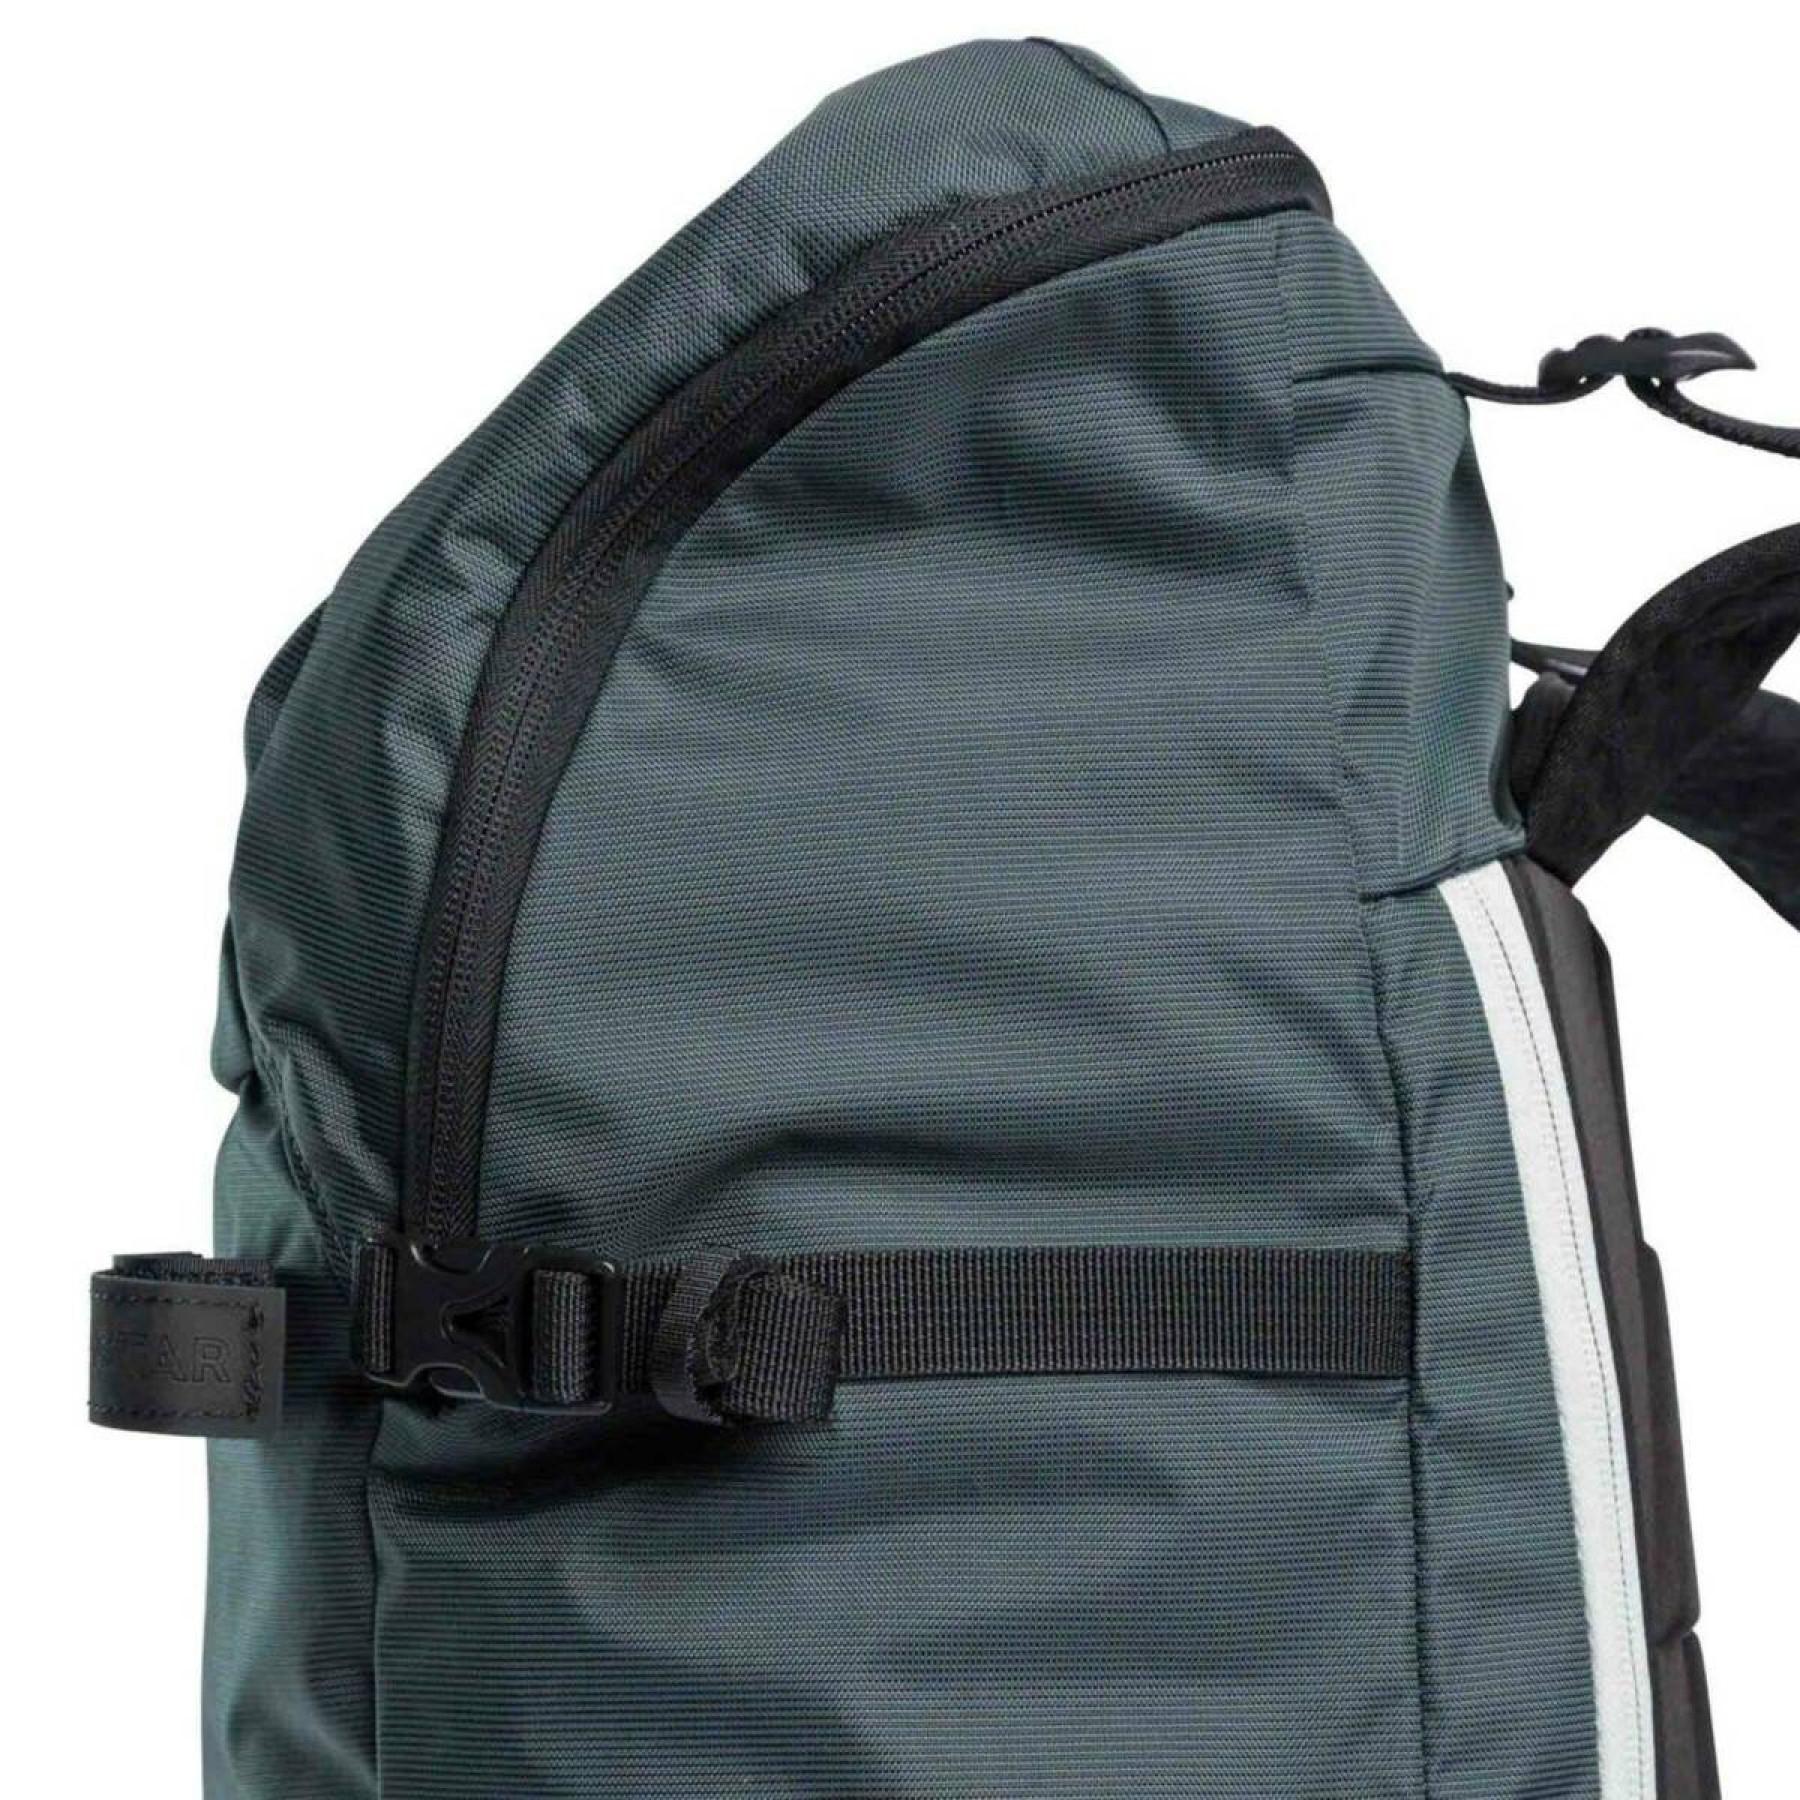 Backpack Dynastar m-35 light